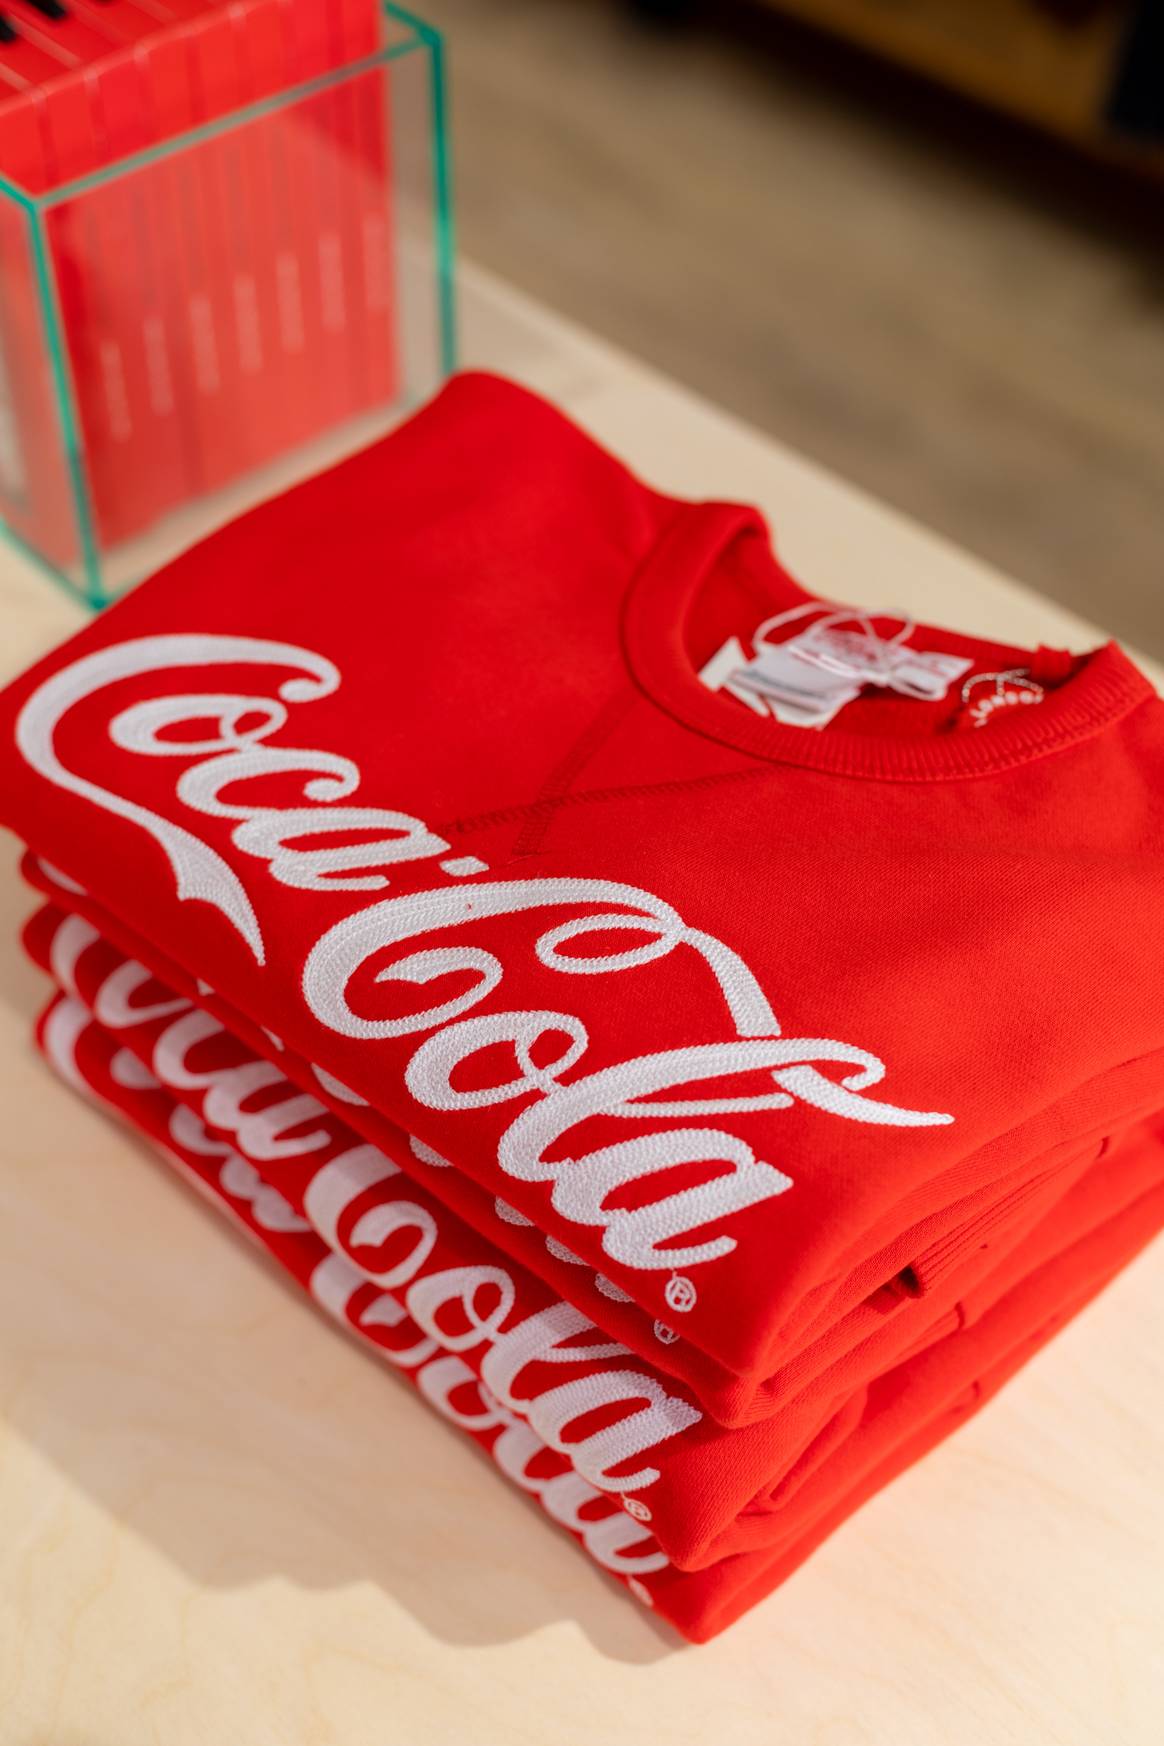 Imagen: Coca Cola